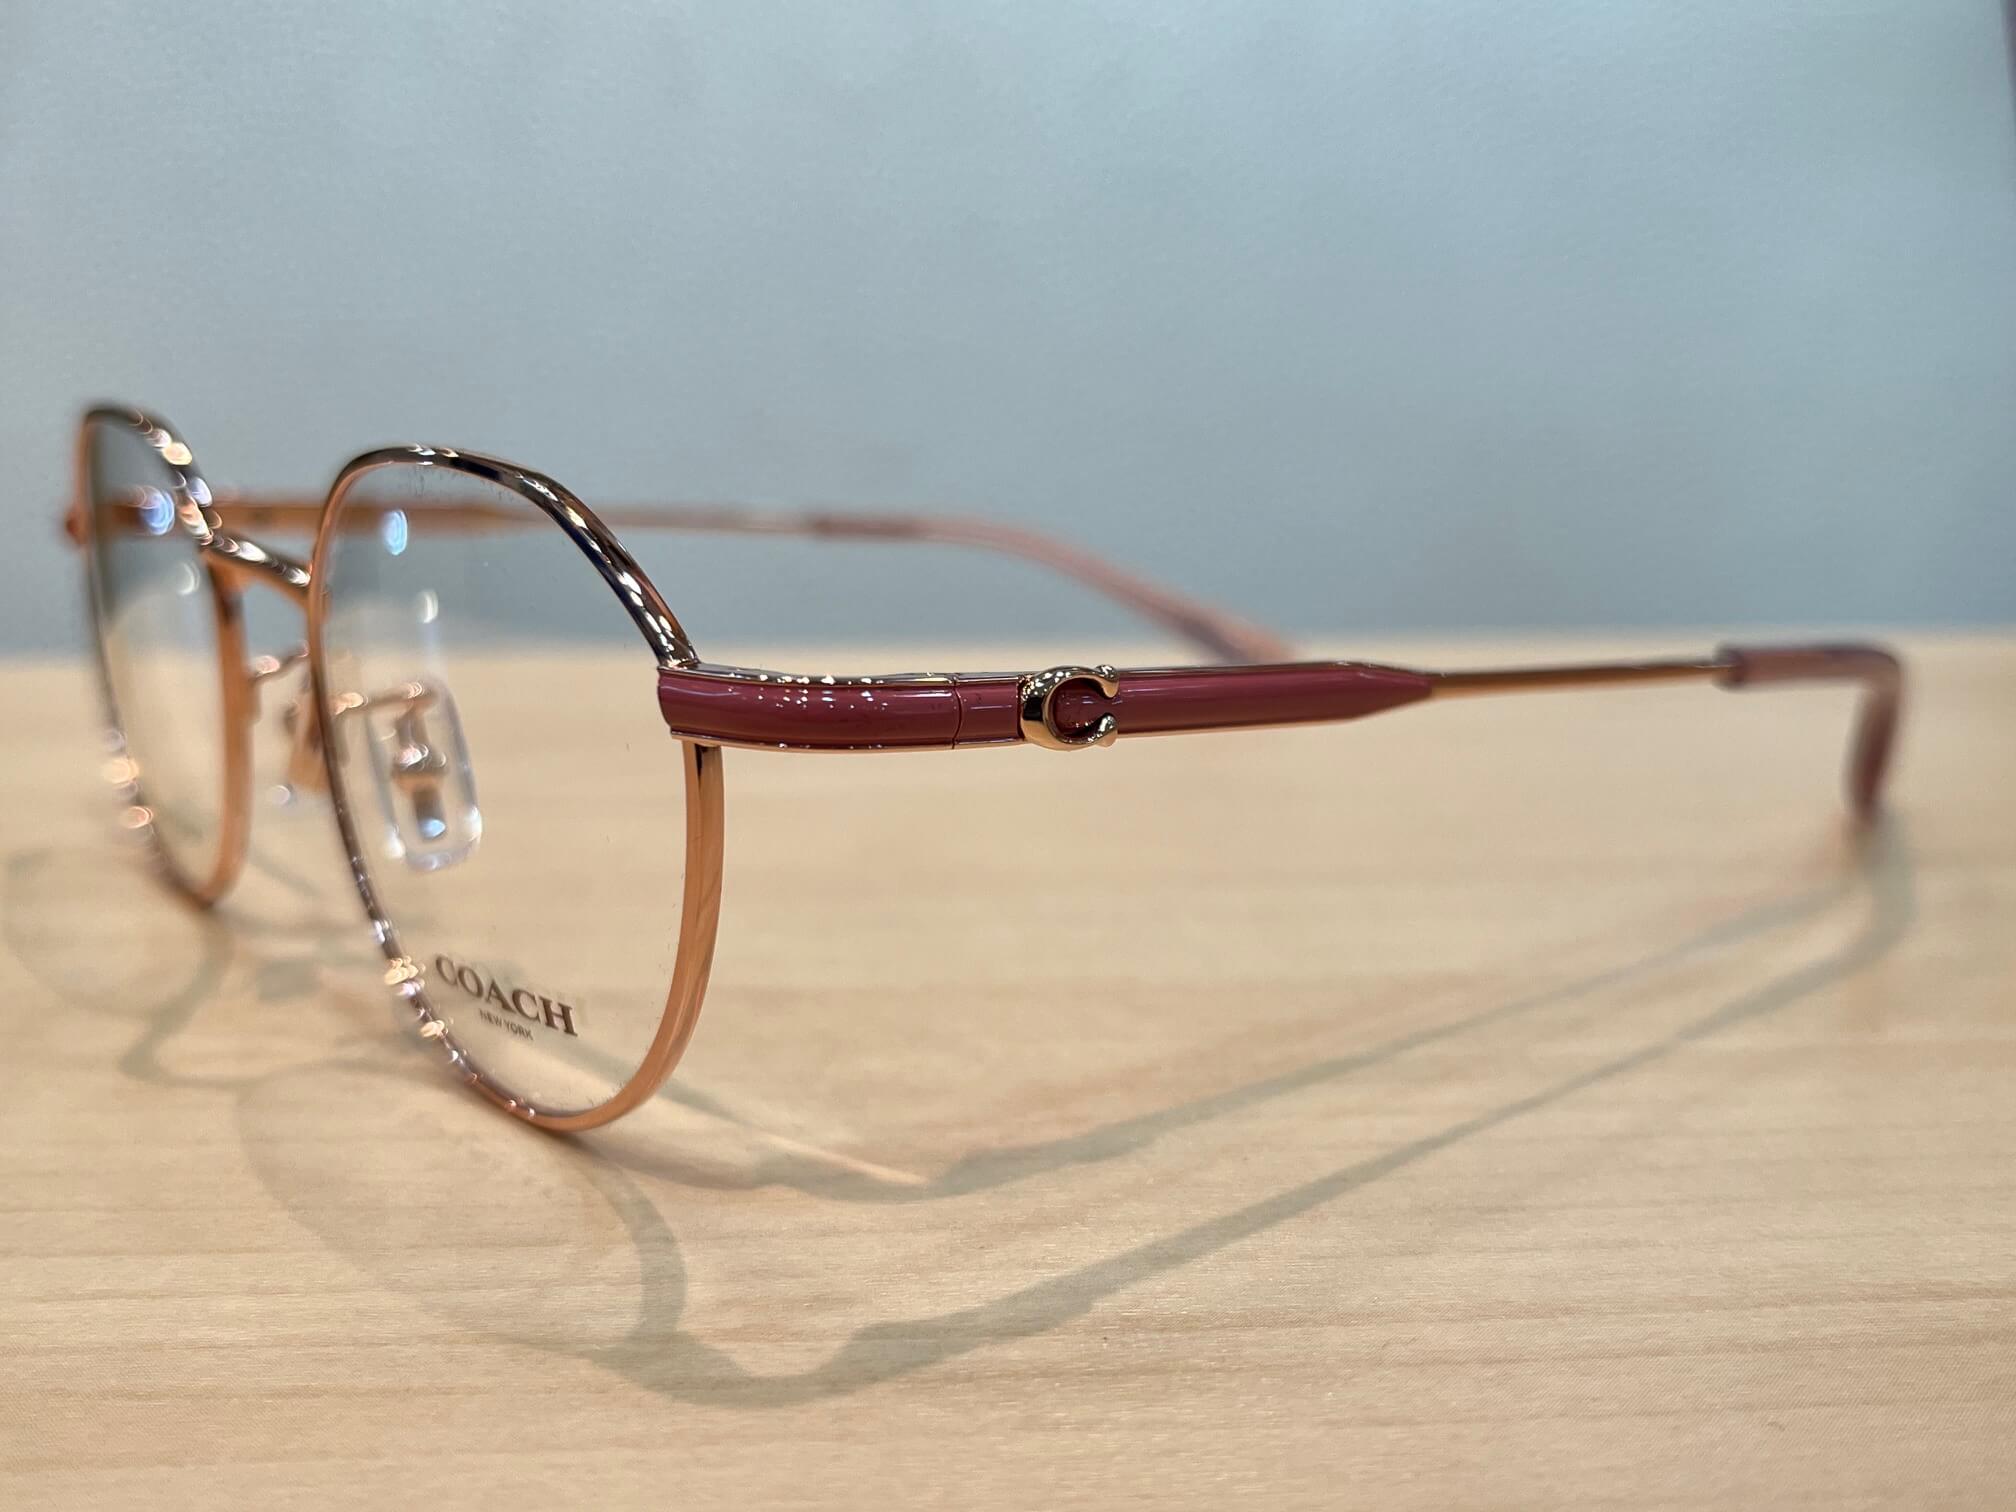 コーチHC5173TDシンプルでエレガントなクラウンパント女性用メガネです。 | 飯塚 田川のメガネ店 メガネのサトー